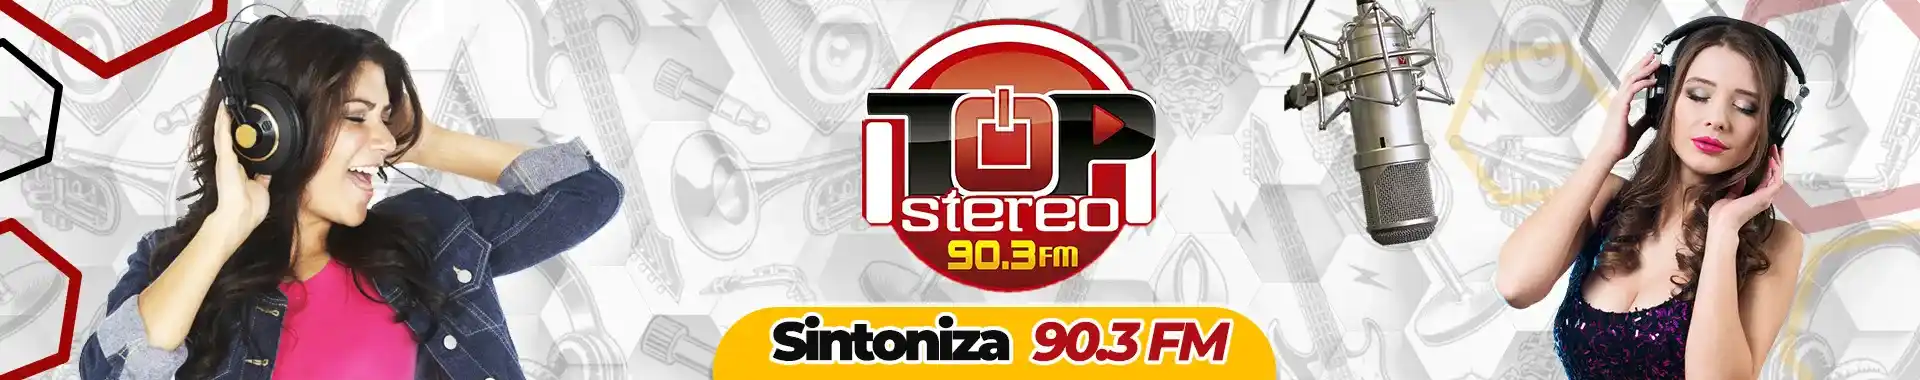 Imagen 3 del perfil de Top Stereo 90.3 FM